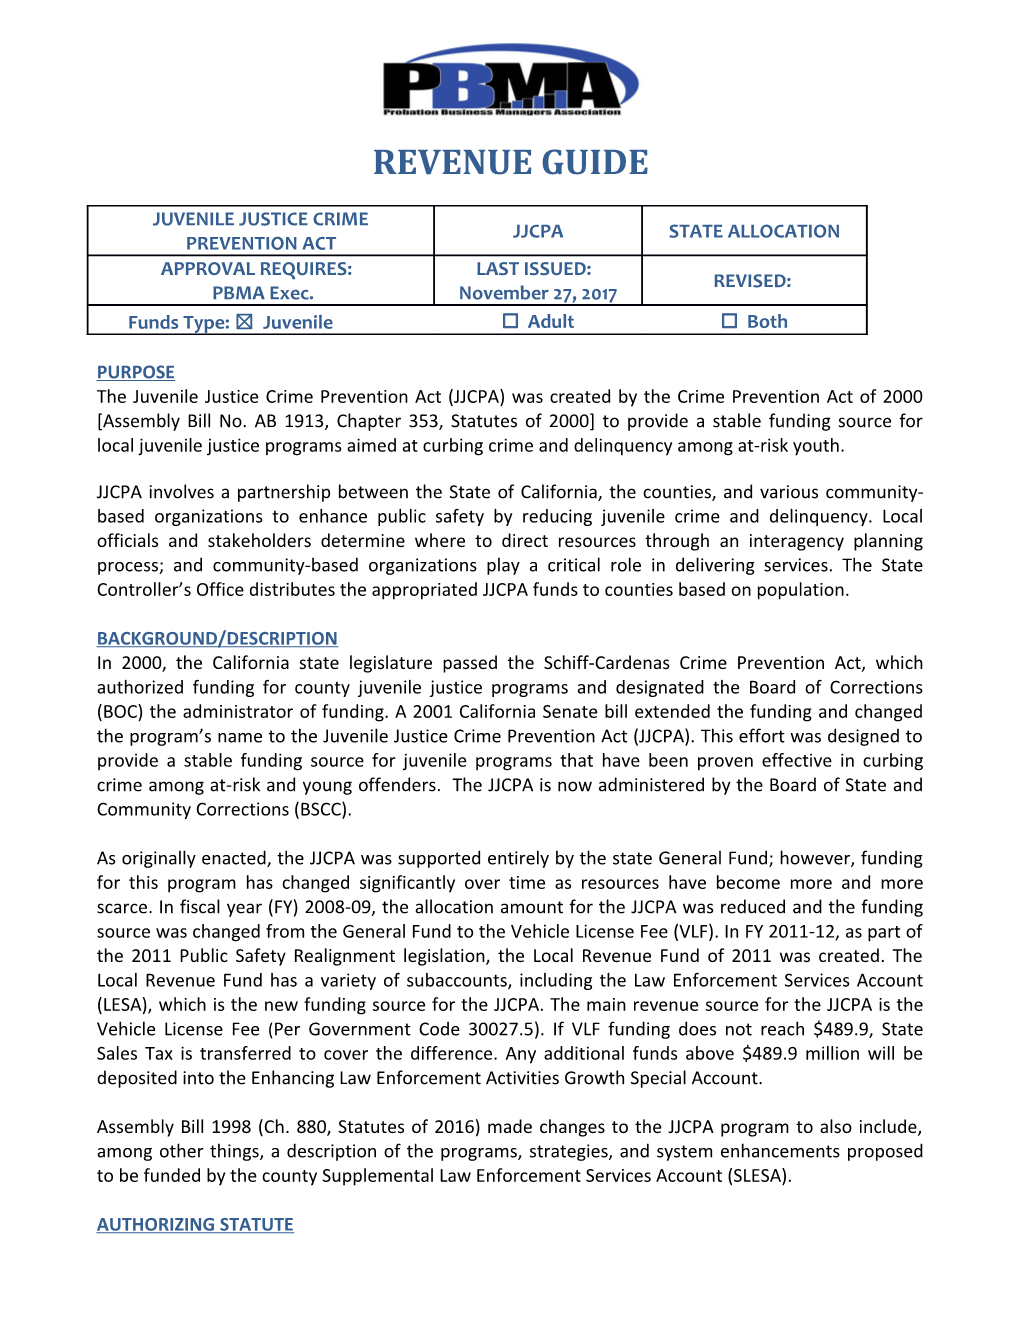 Revenue Guide JJCPA